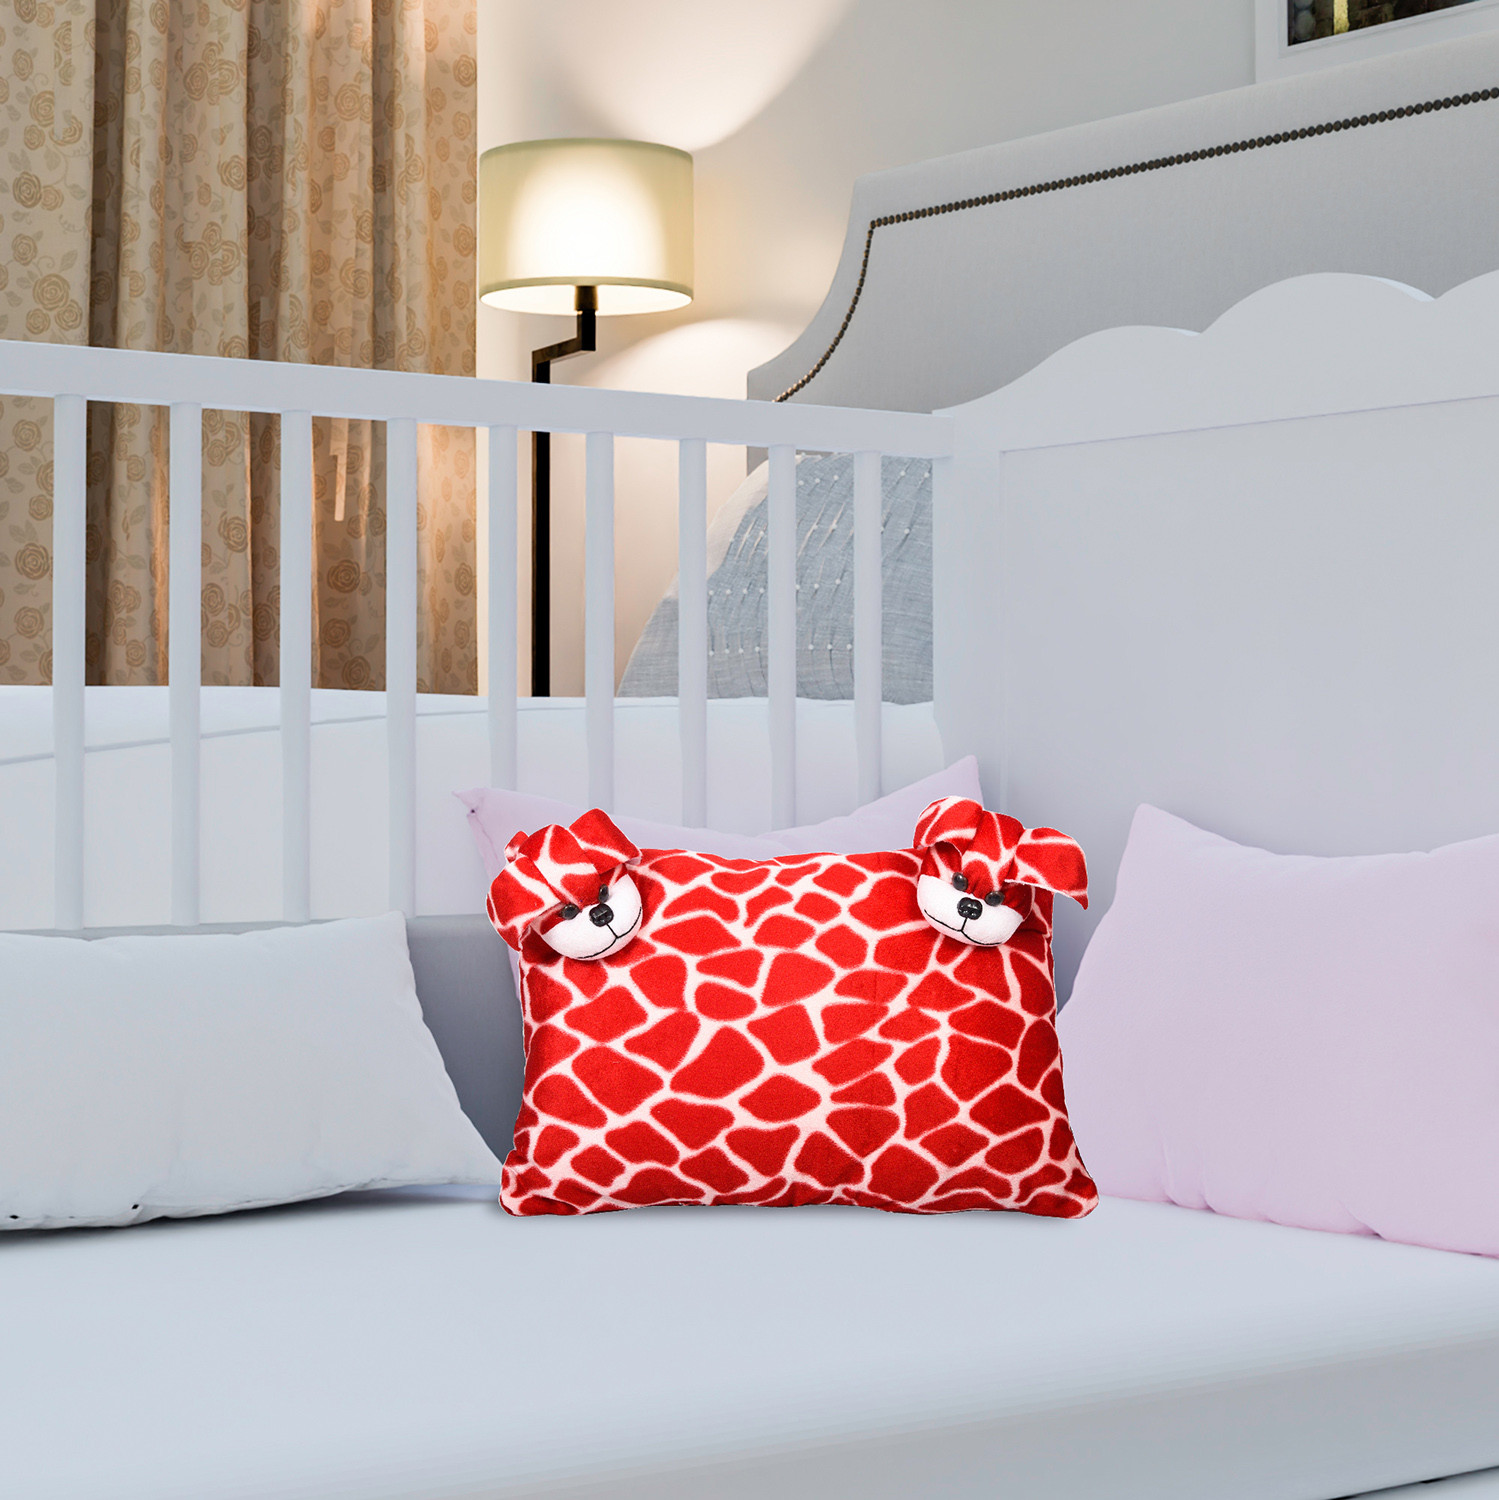 Kuber Industries Teddy Design Baby Pillow|Velvet Super soft Kids Pillow For Sleeping & Travel,12 x 18 Inch,(Red)